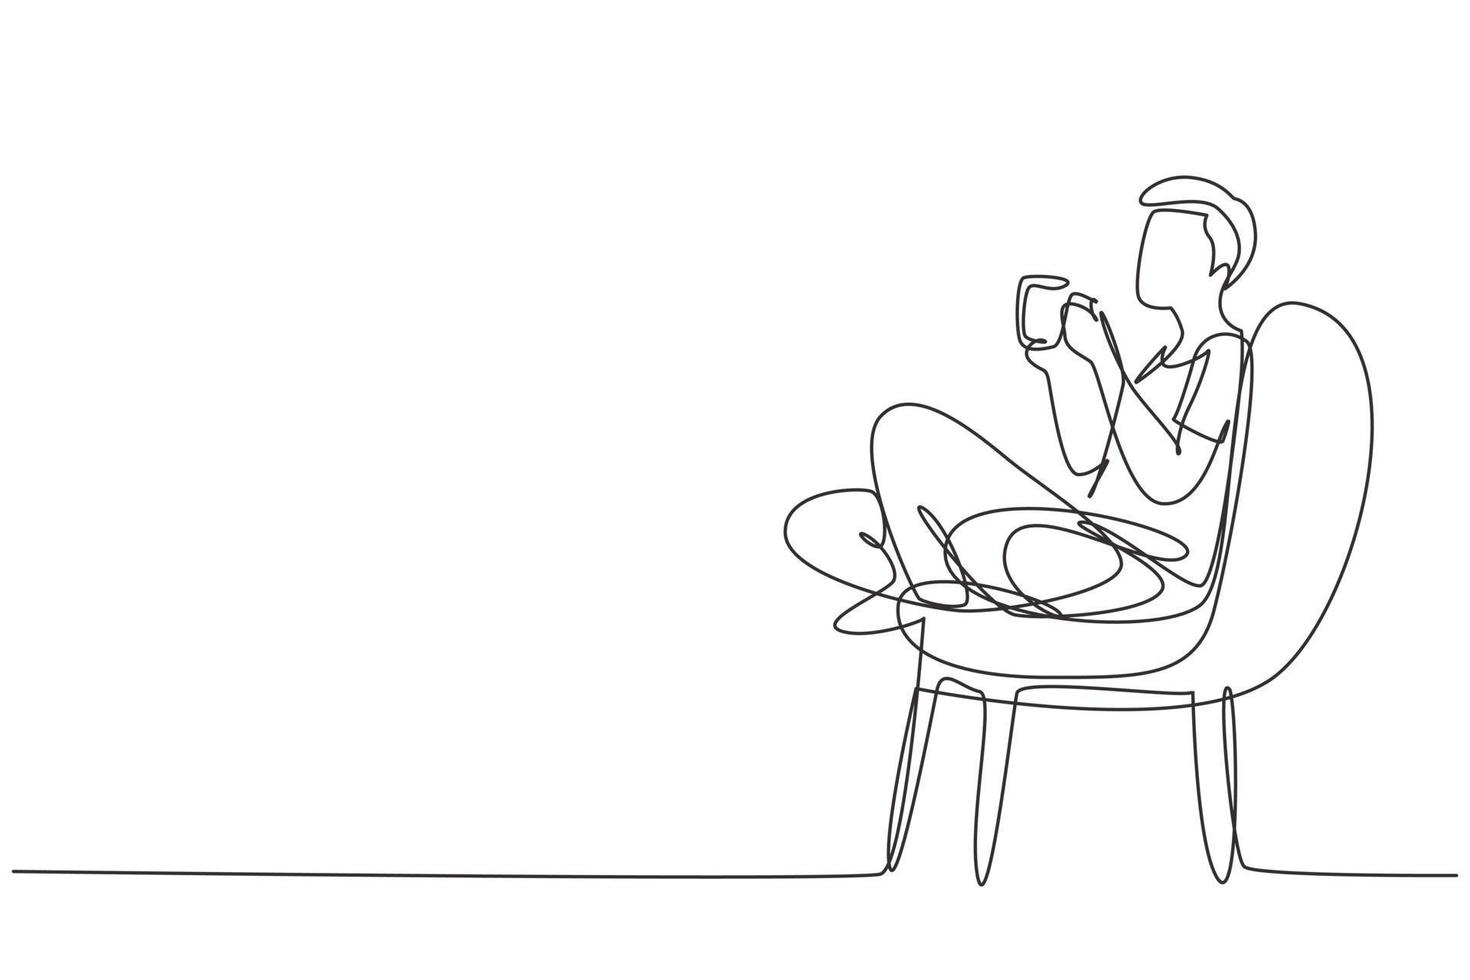 la hora del té de dibujo de una sola línea continua. chico guapo relajado sentado en una silla moderna, disfrutando de un café caliente frente a la ventana, vista lateral, espacio libre. Ilustración de vector de diseño gráfico de dibujo de una línea